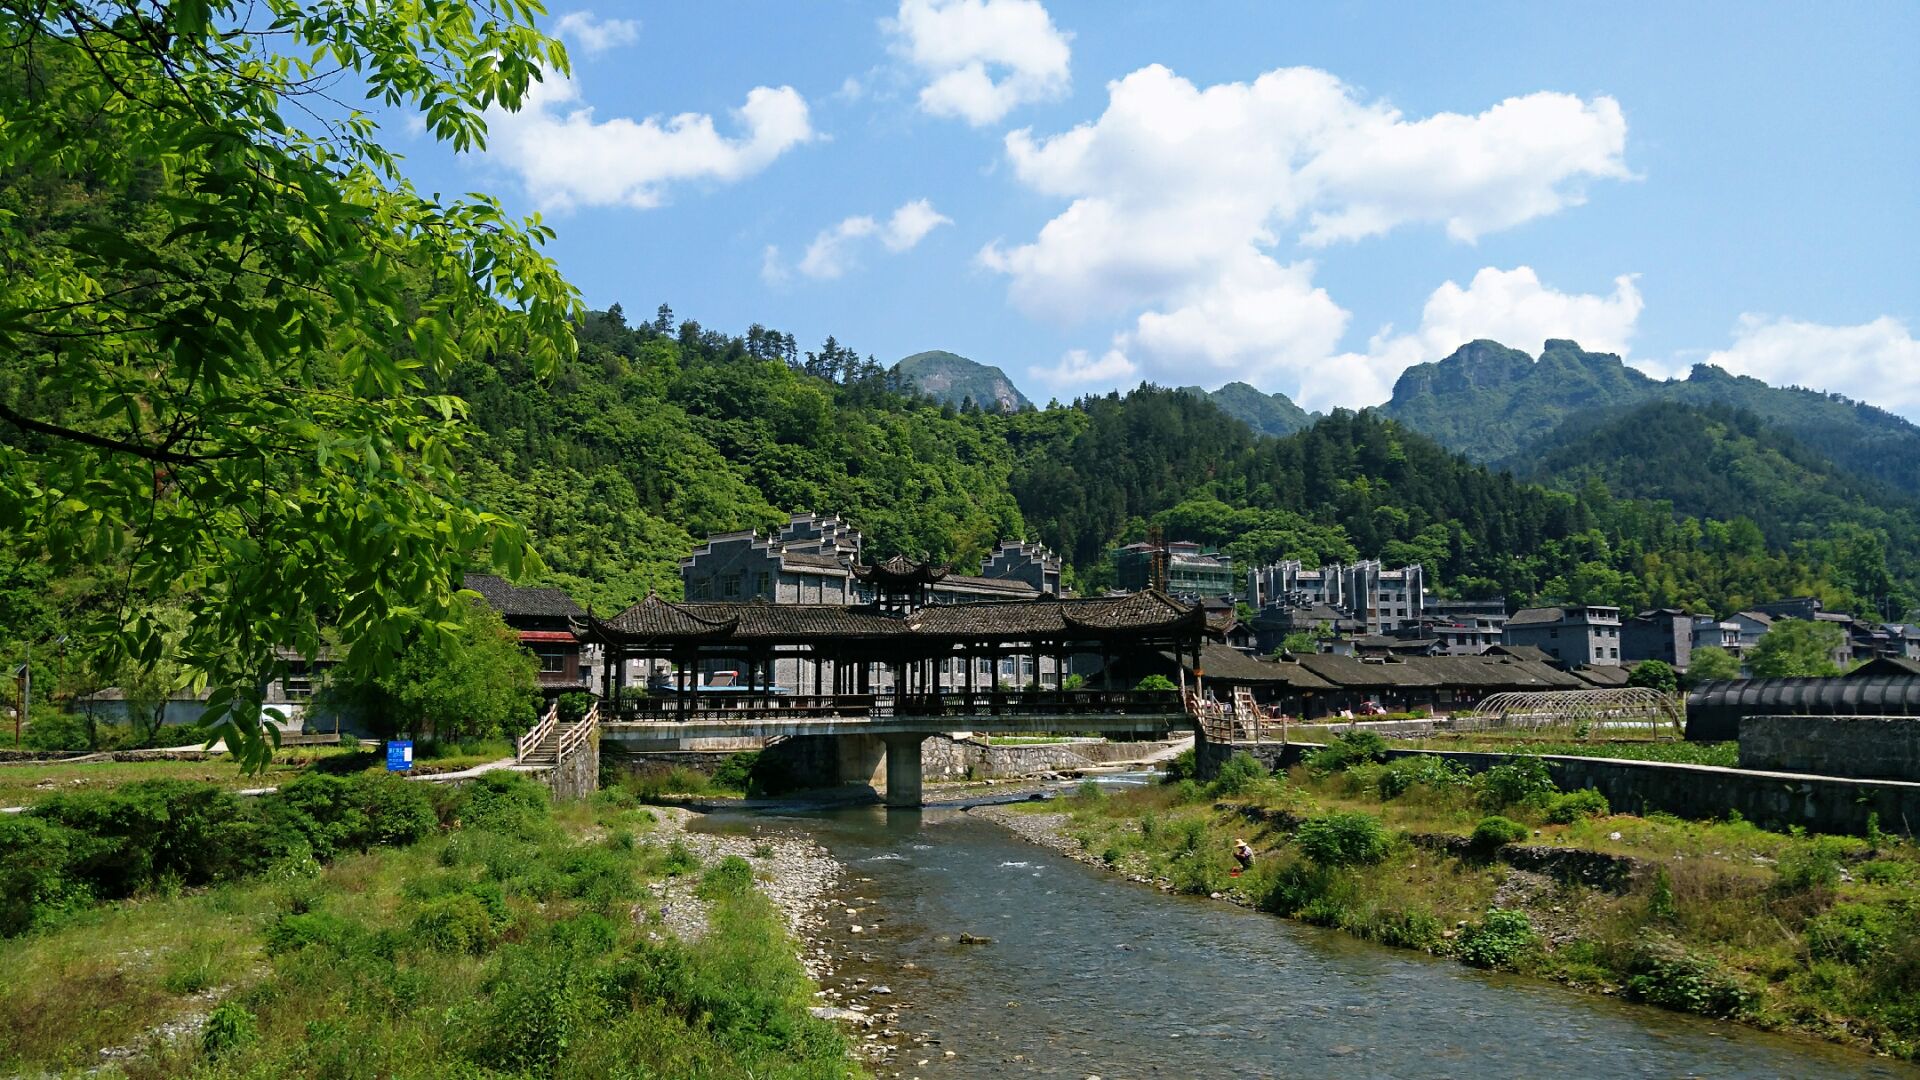 湘西吕洞山风景区图片